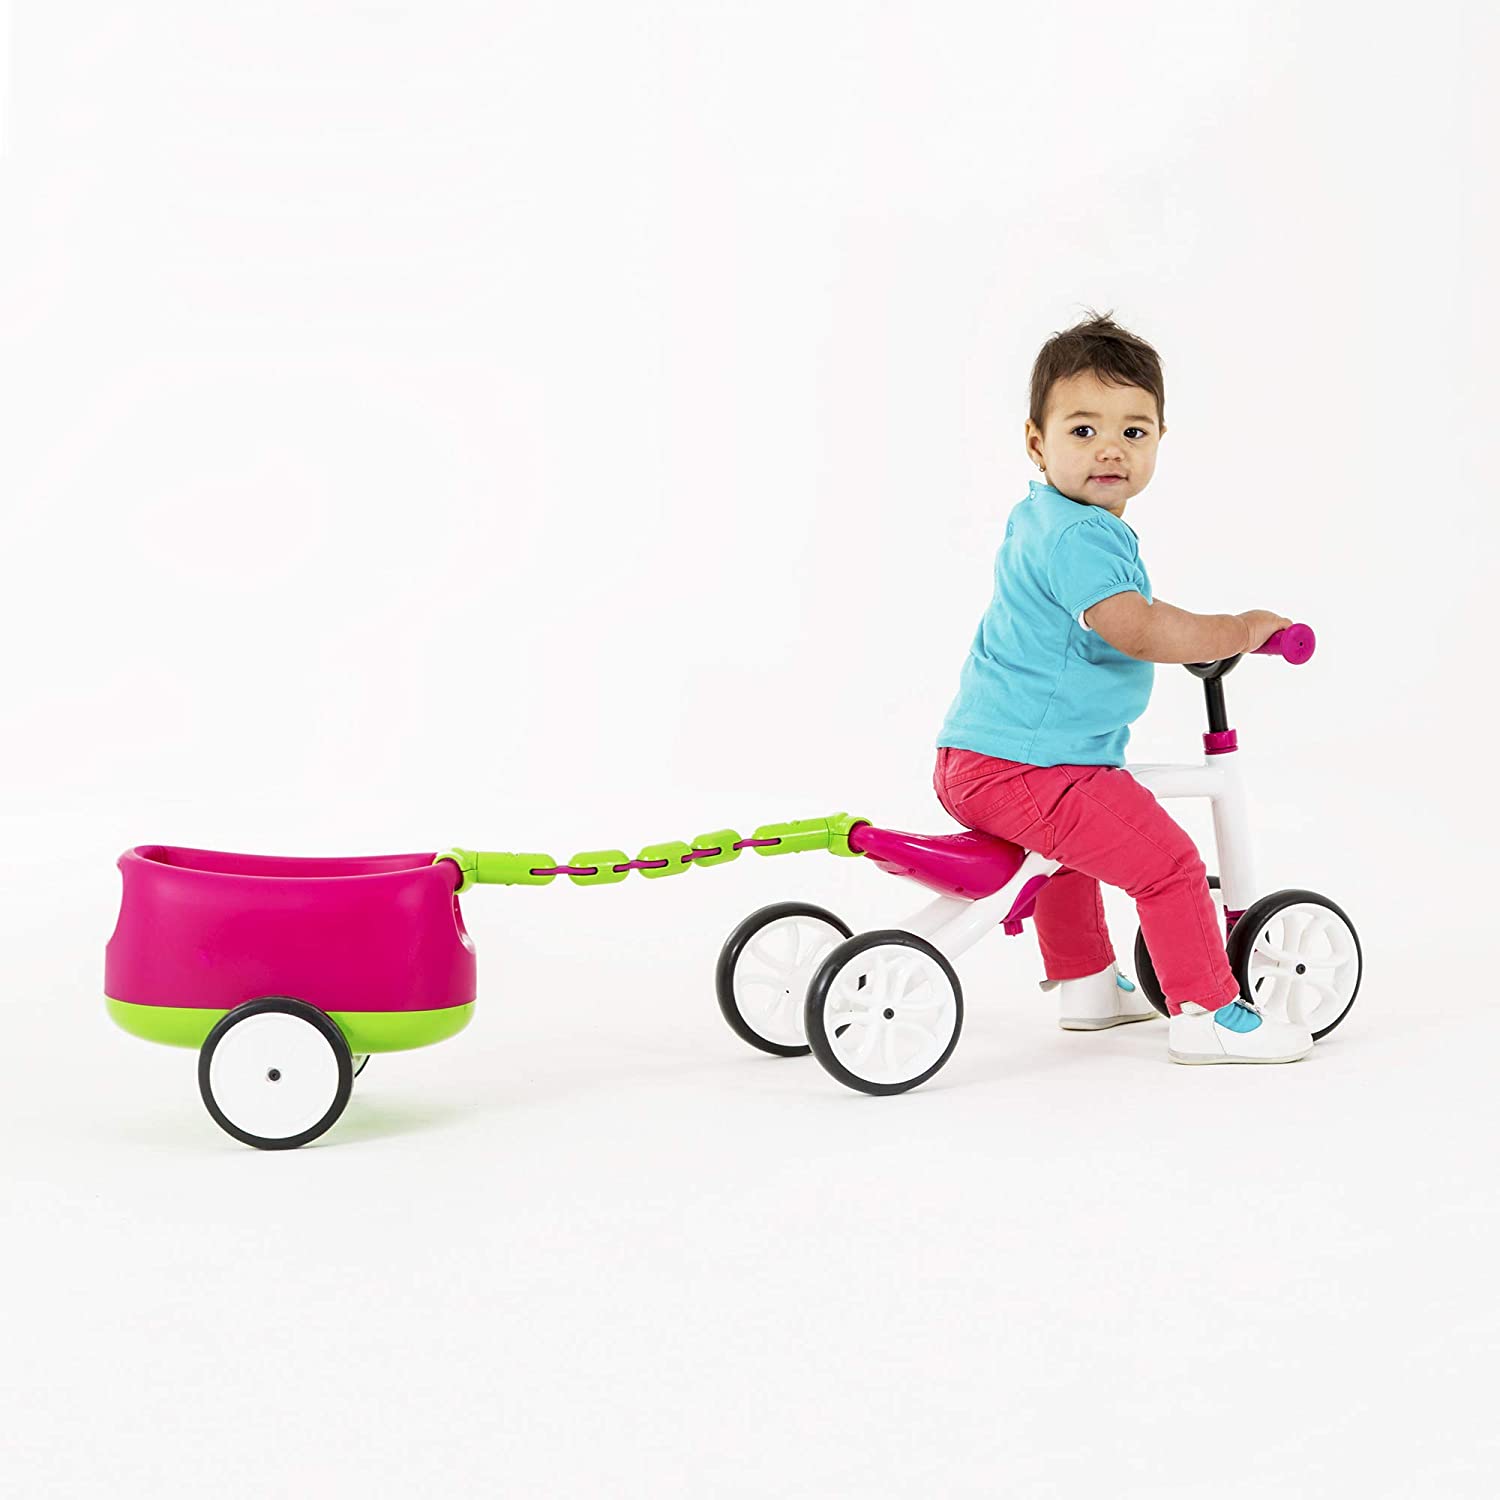 Bicicletă roz cu 4 roți, fără pedale, reglabilă pe înălțime și remorcă detașabilă – Quadie Trailie Bicicletă